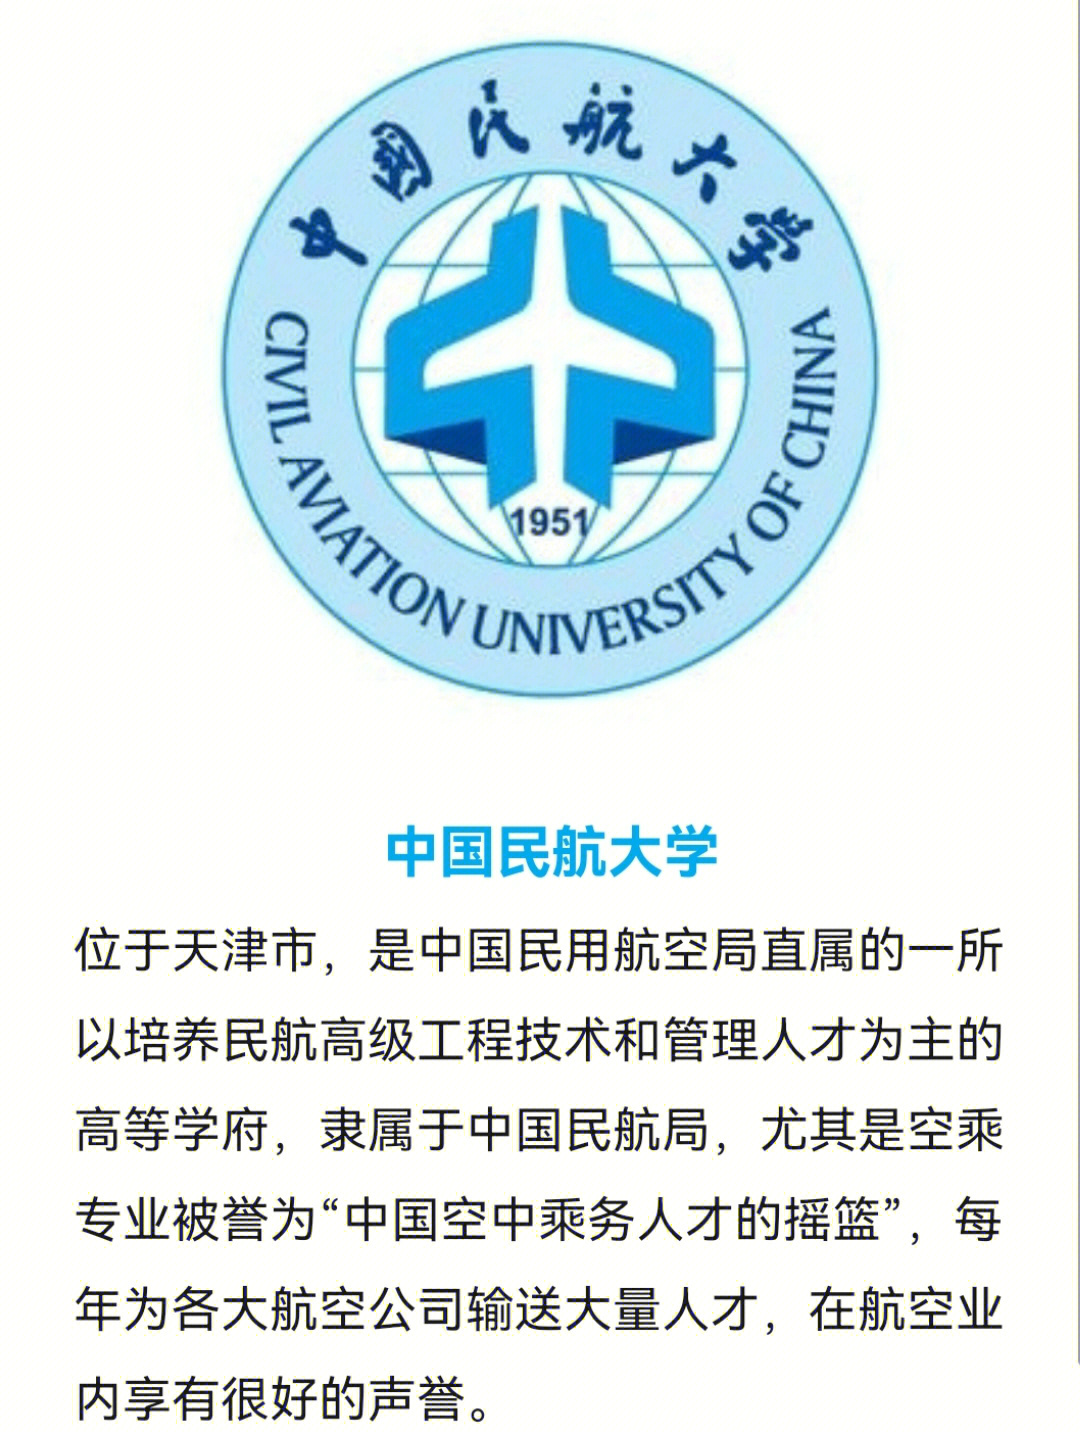 中国民航大学乘务学院图片